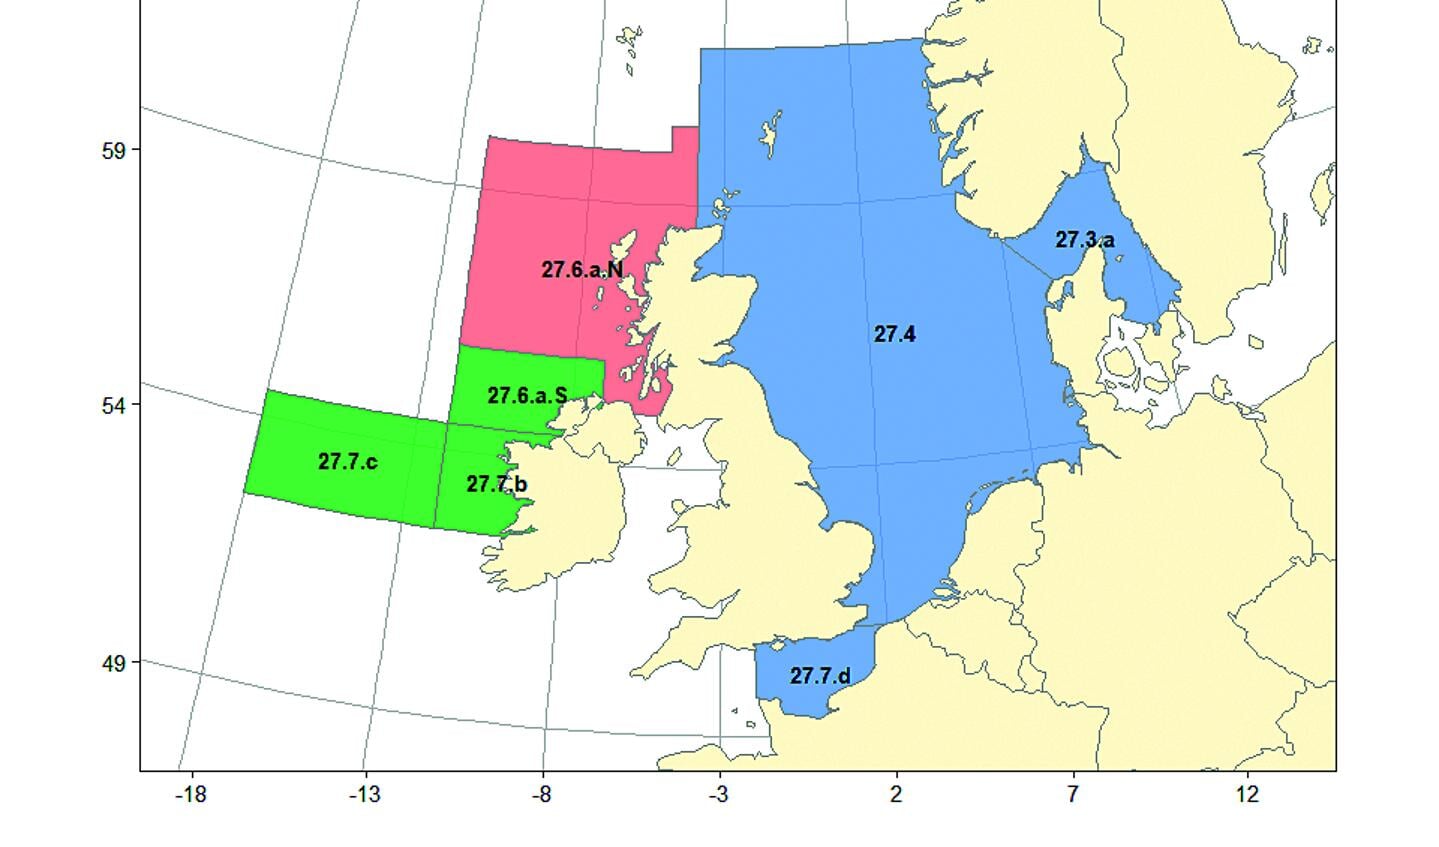 De huidige indeling van haringbestanden in de verschillende ICES-gebieden: 6a noord najaarspaaiende haring (rood), 6a zuid – 7bc haring (groen) en Noordzeeharing (blauw). Het nieuwe haringbestand 6a noord voorjaarspaaiende haring staat hier nog niet op aangegeven.